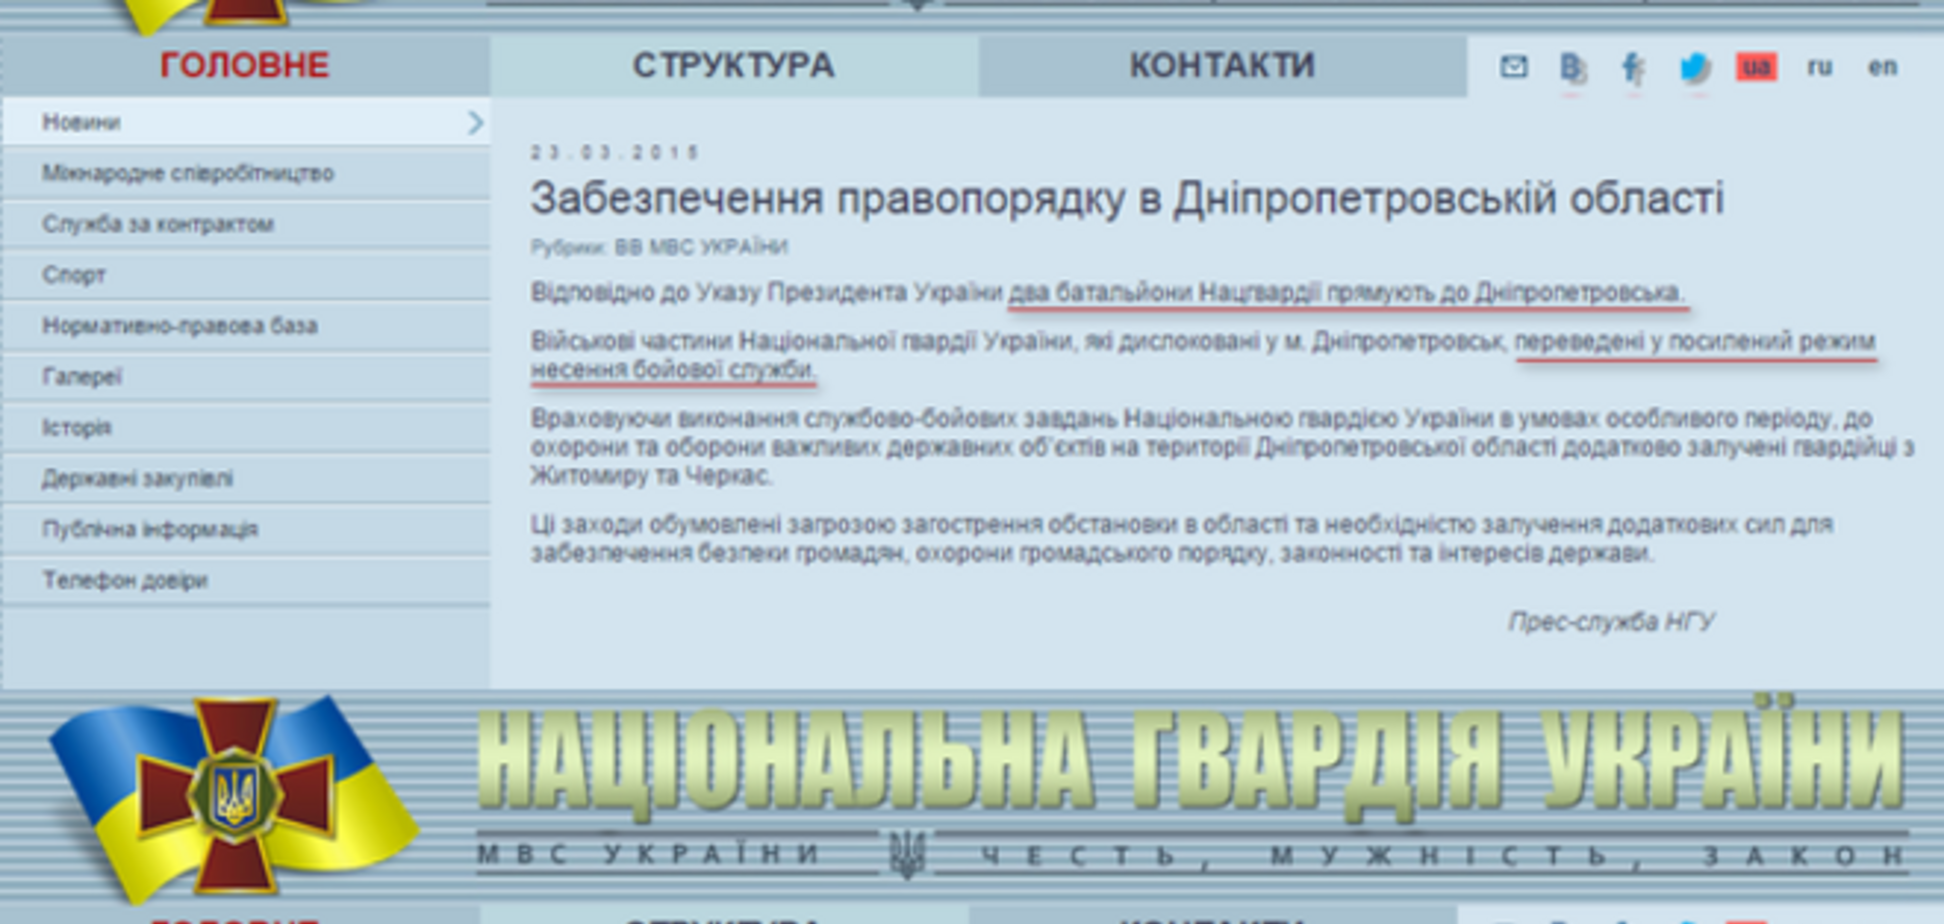 Нацгвардія 'відправила' до Дніпропетровська два батальйони, але відразу ж 'повернула' назад